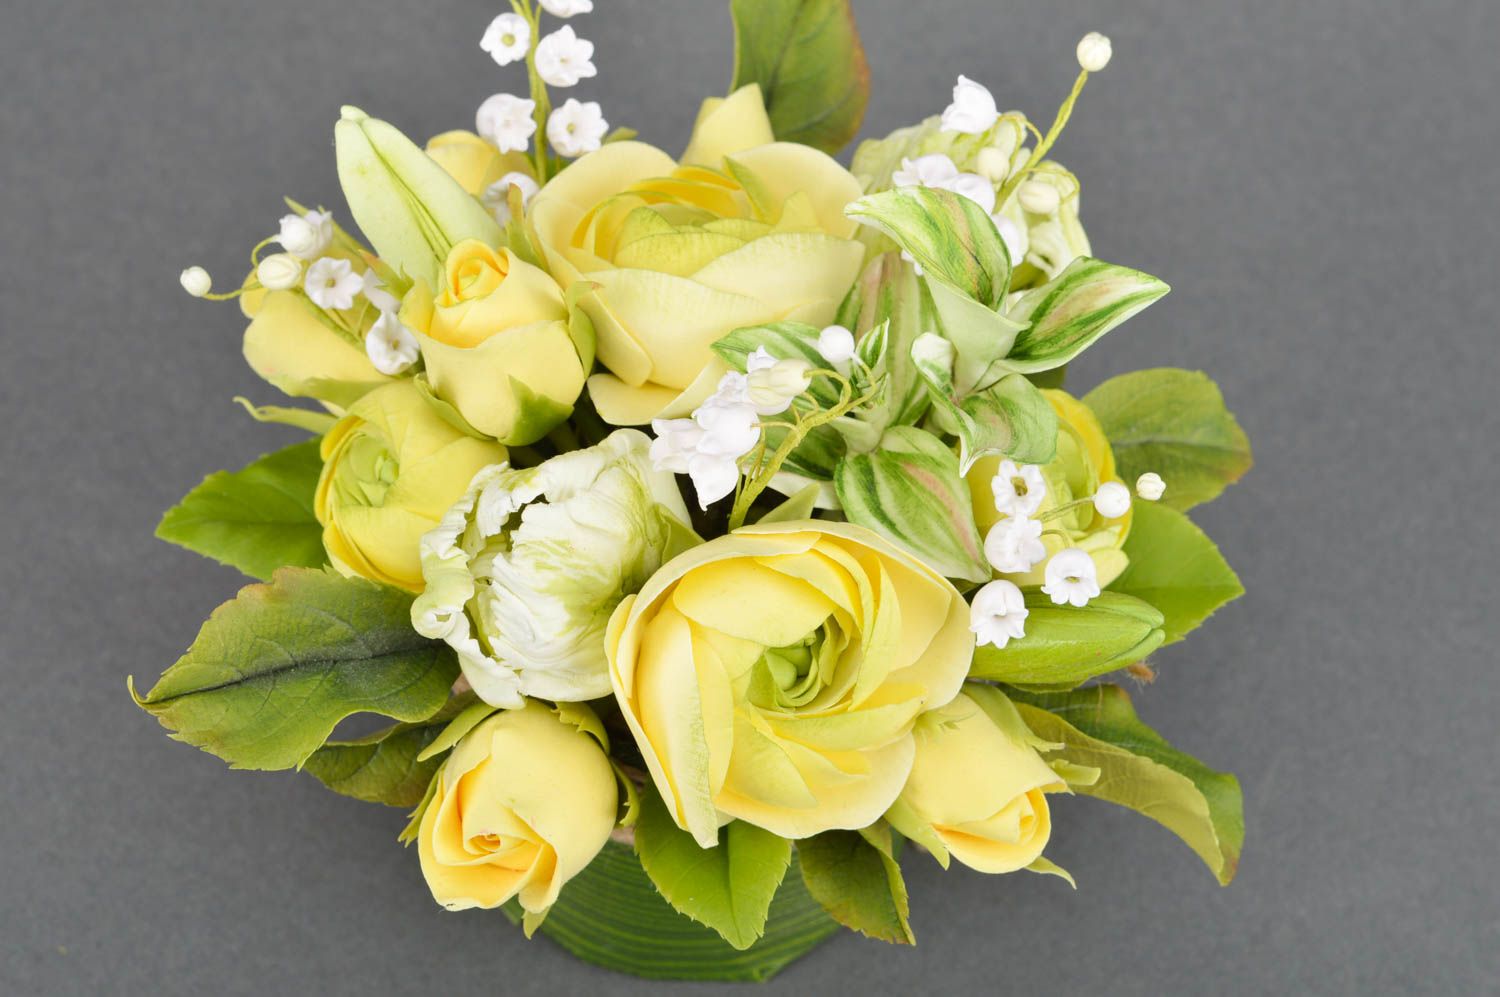 Flores decorativas de arcilla polimérica artesanales en maceta de colores amarillo y verde foto 5